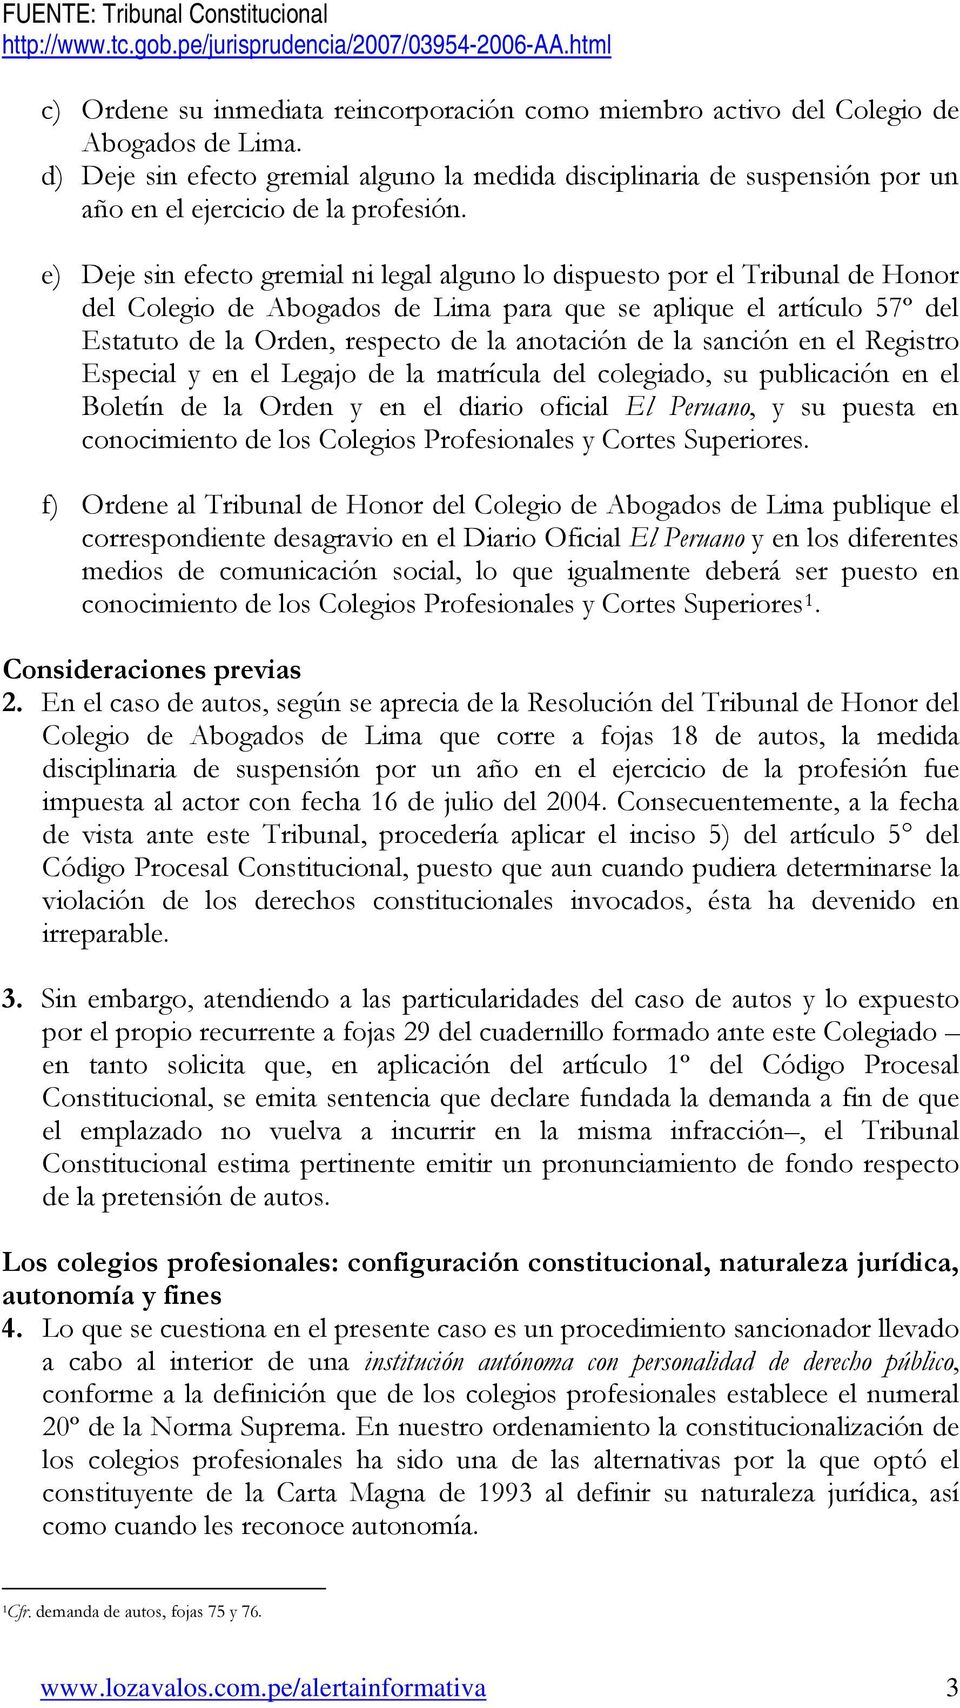 e) Deje sin efecto gremial ni legal alguno lo dispuesto por el Tribunal de Honor del Colegio de Abogados de Lima para que se aplique el artículo 57º del Estatuto de la Orden, respecto de la anotación